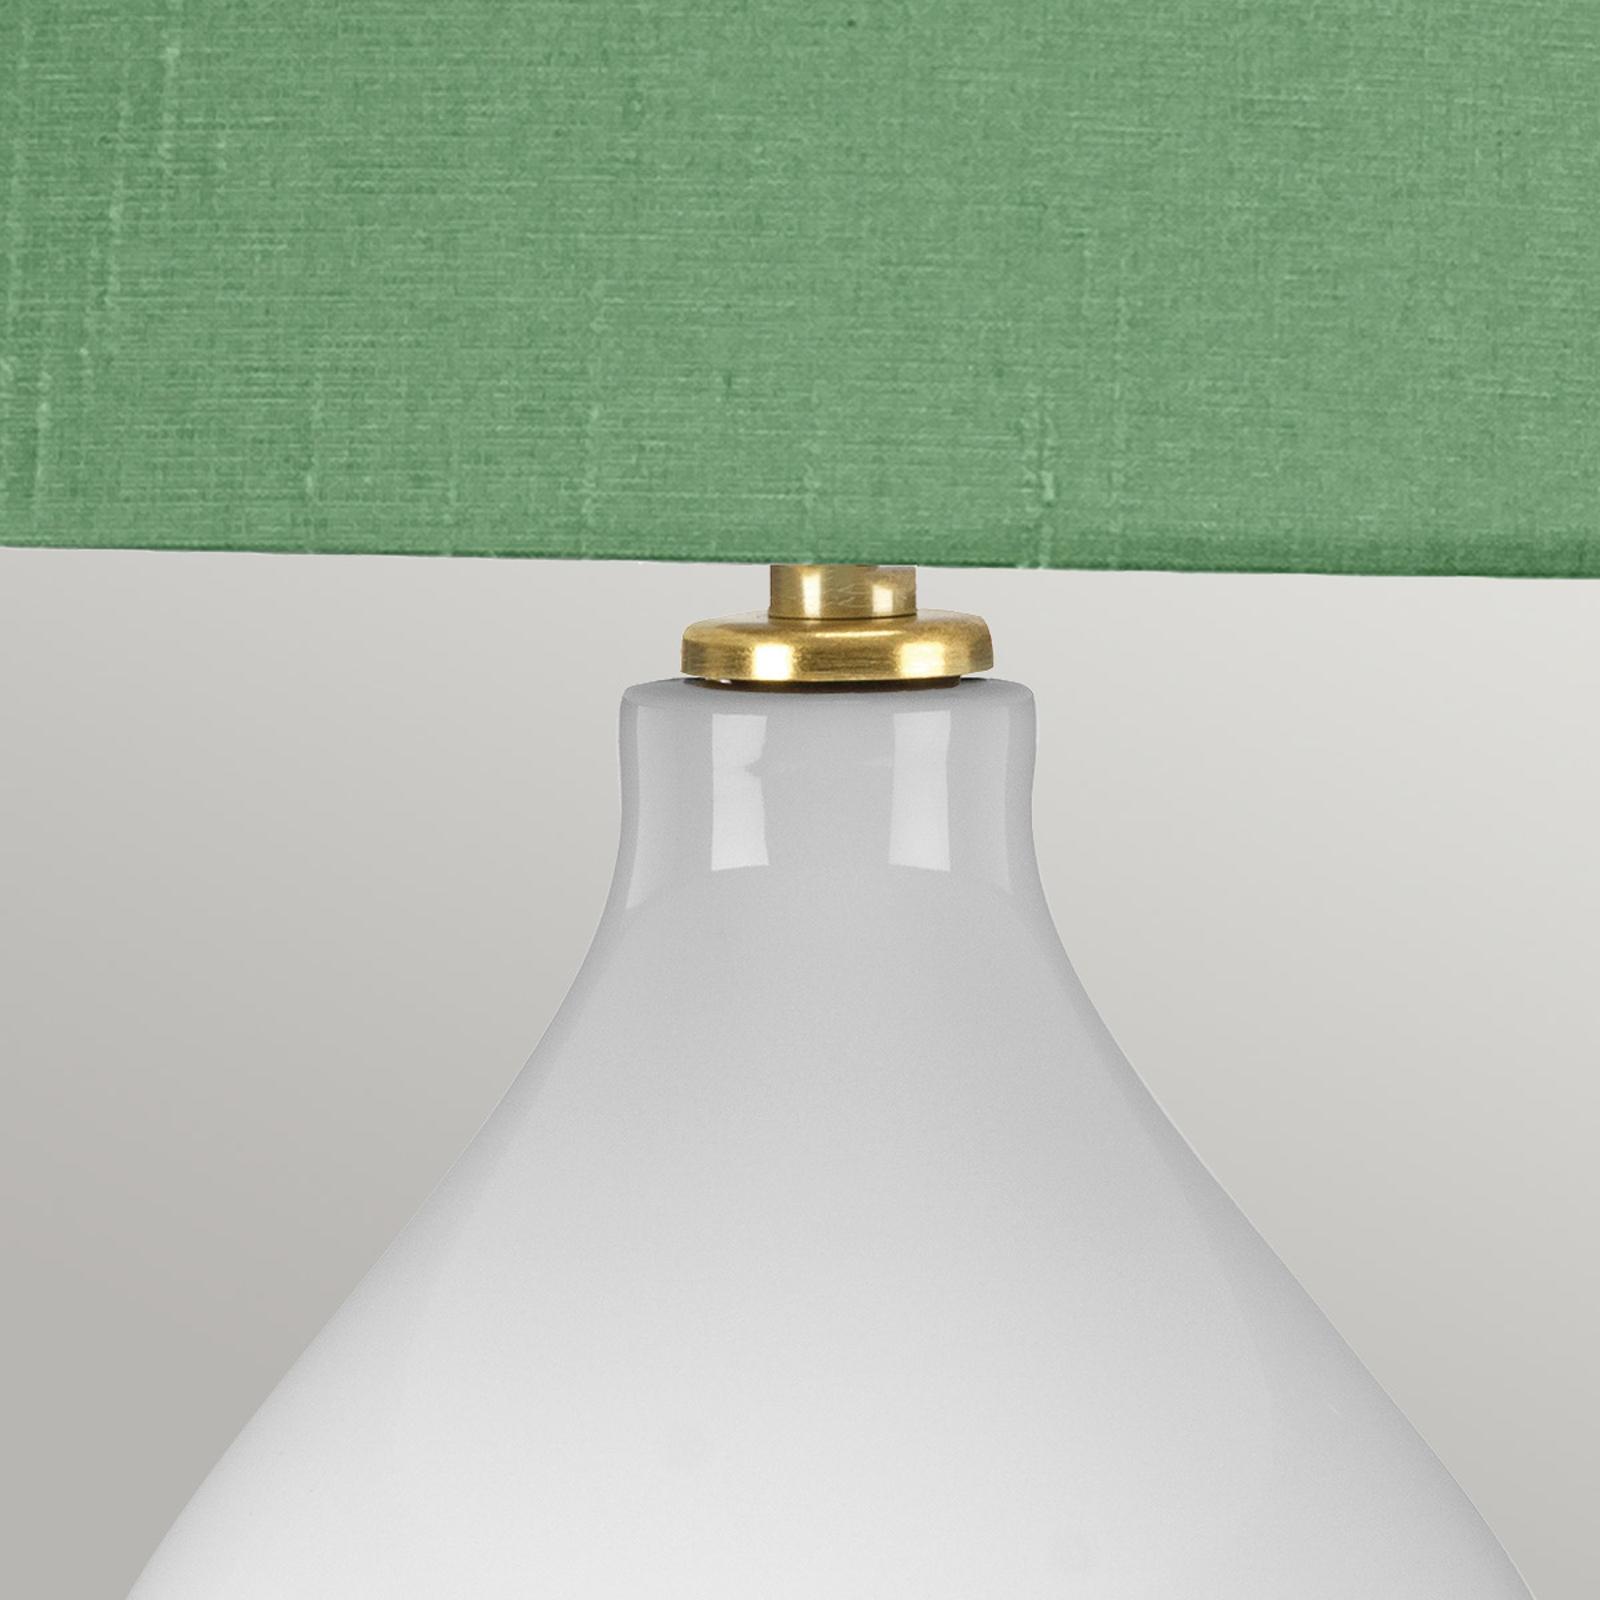 Текстилна настолна лампа Isla месинг антик/зелен